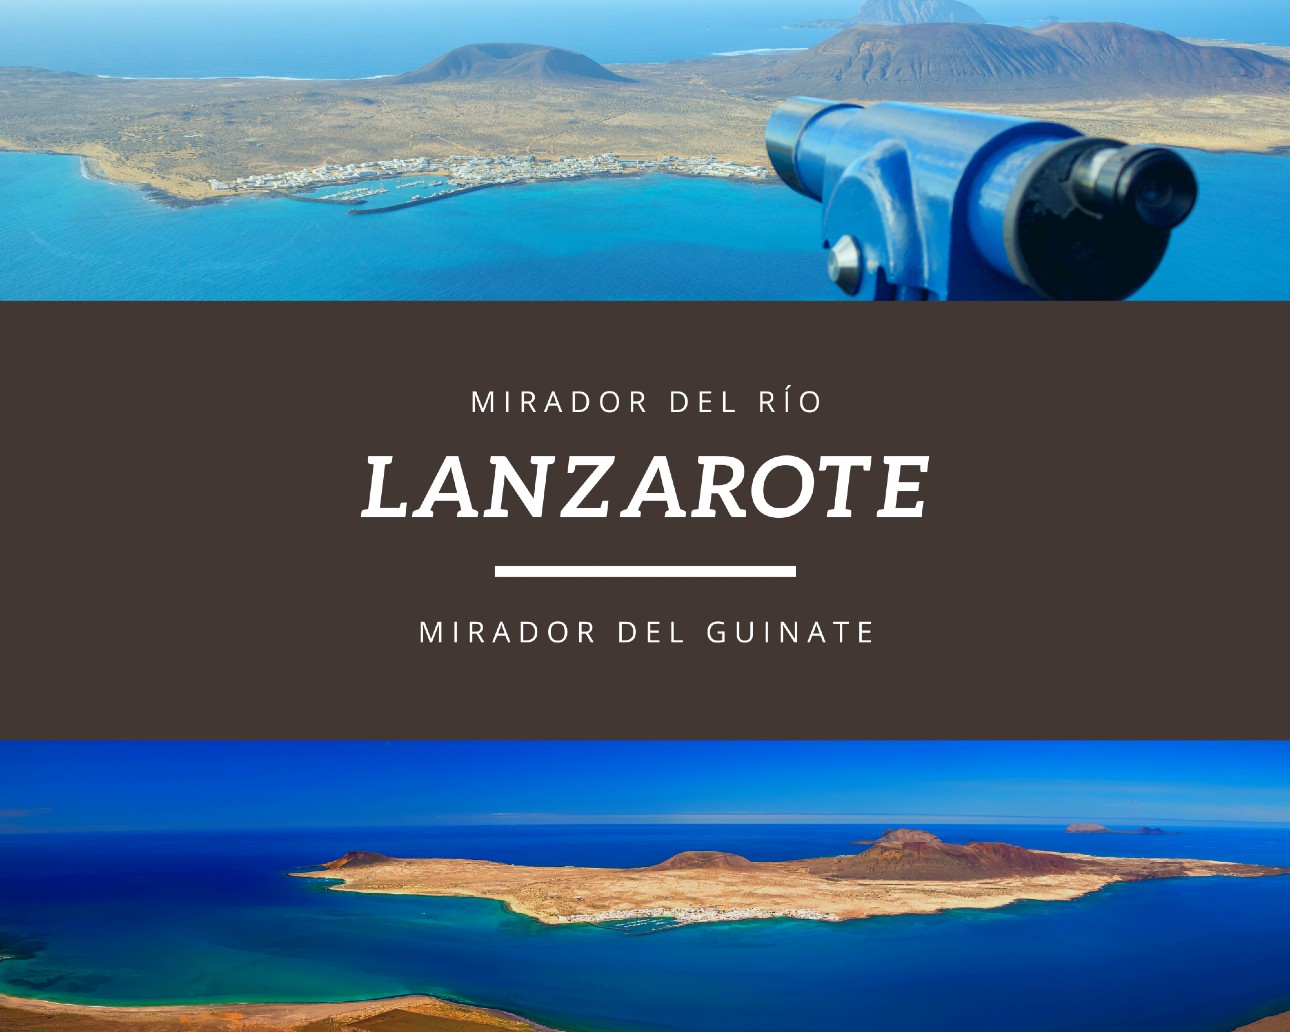 Mirador del Rio i de Guinate - Lanzarote atrakcje